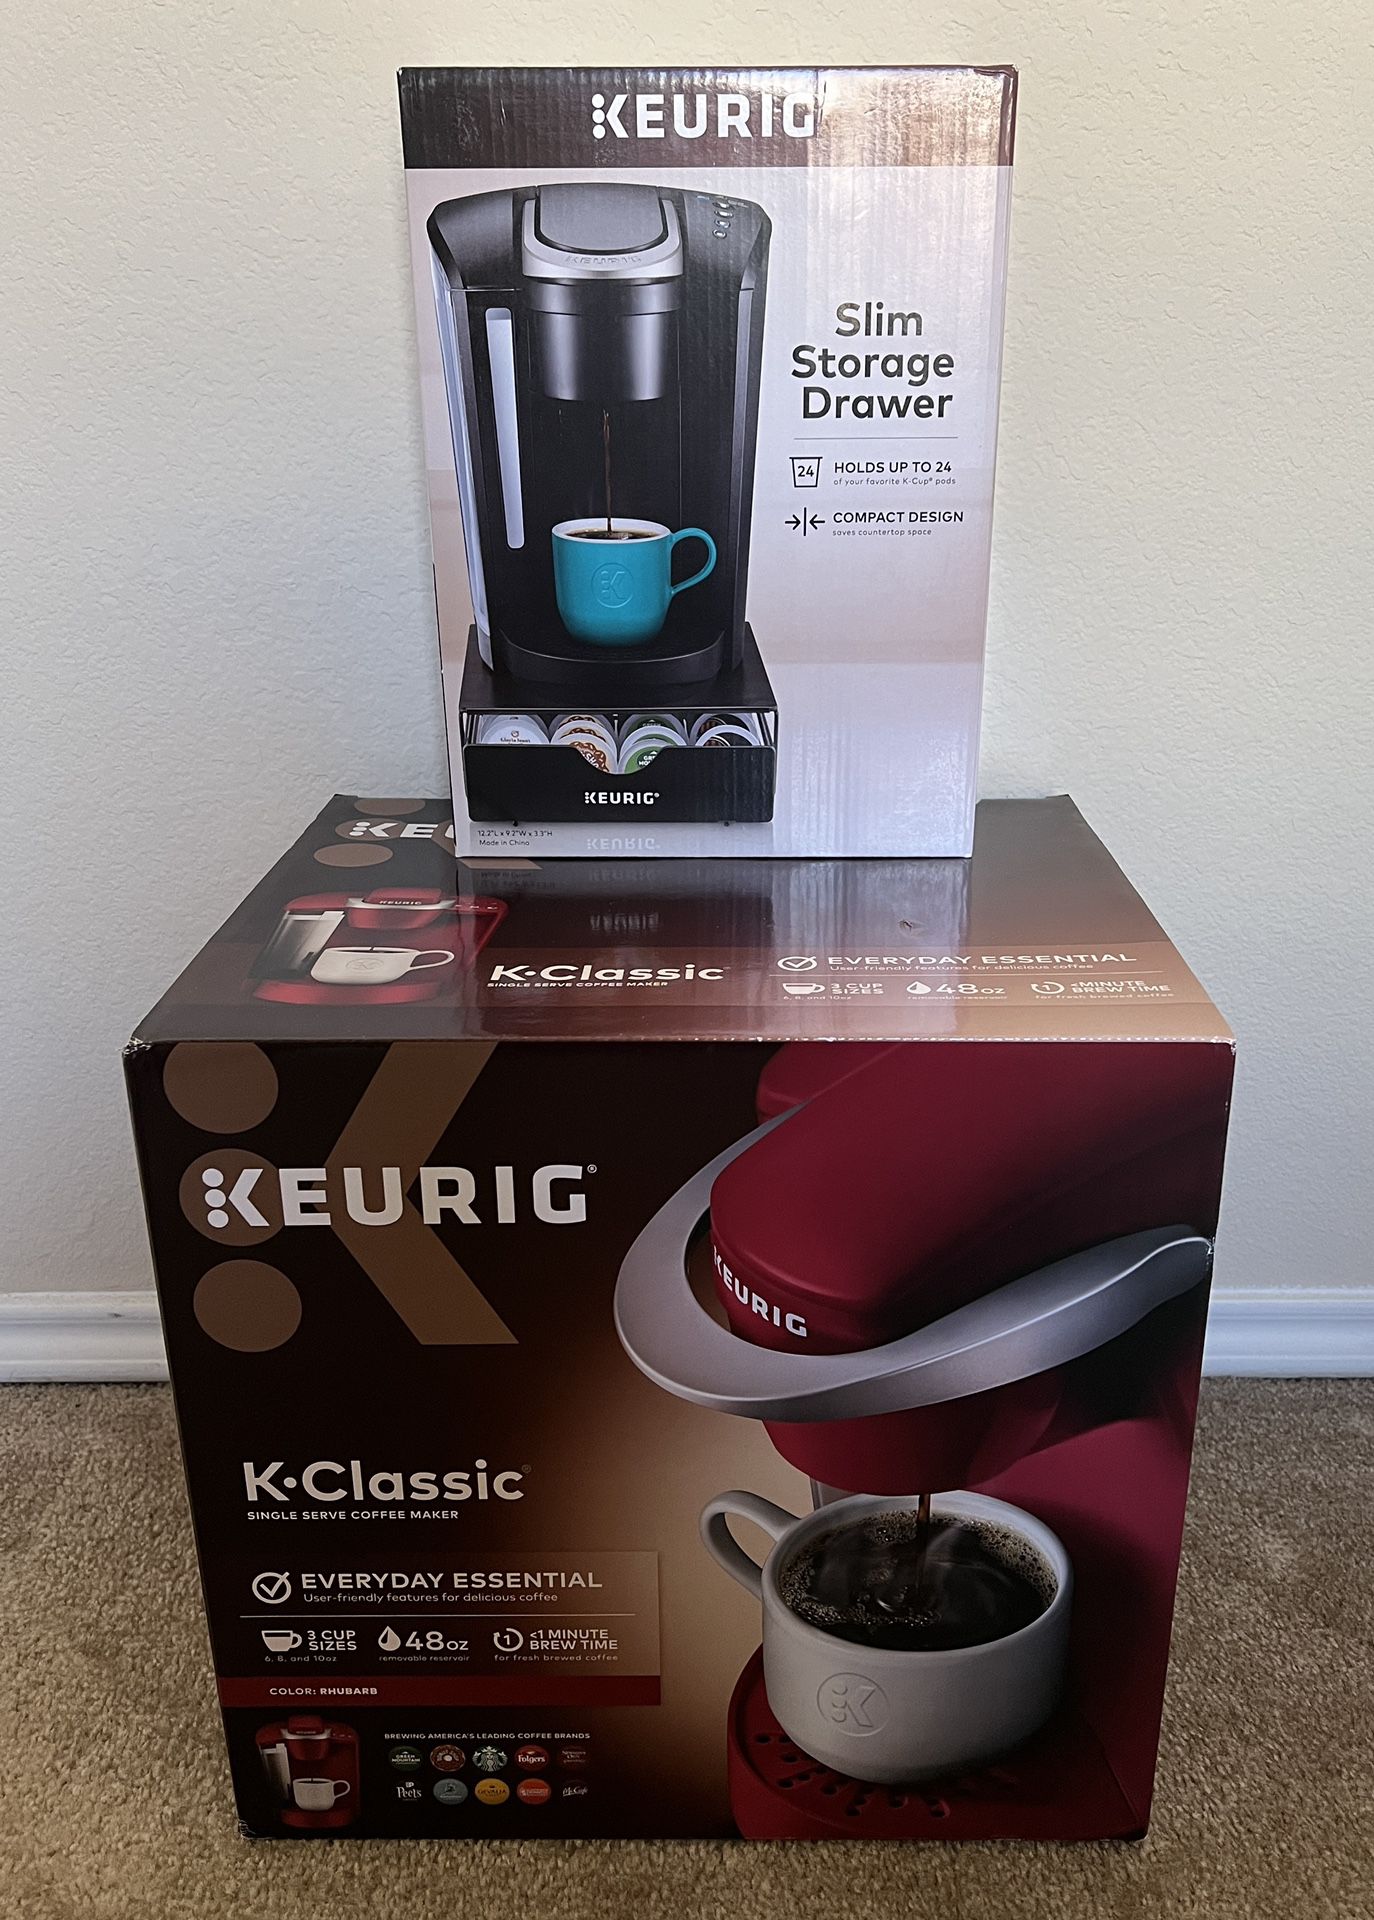 Keurig K-Classic Single Serve Coffee Maker & Keurig Slim Storage Drawer